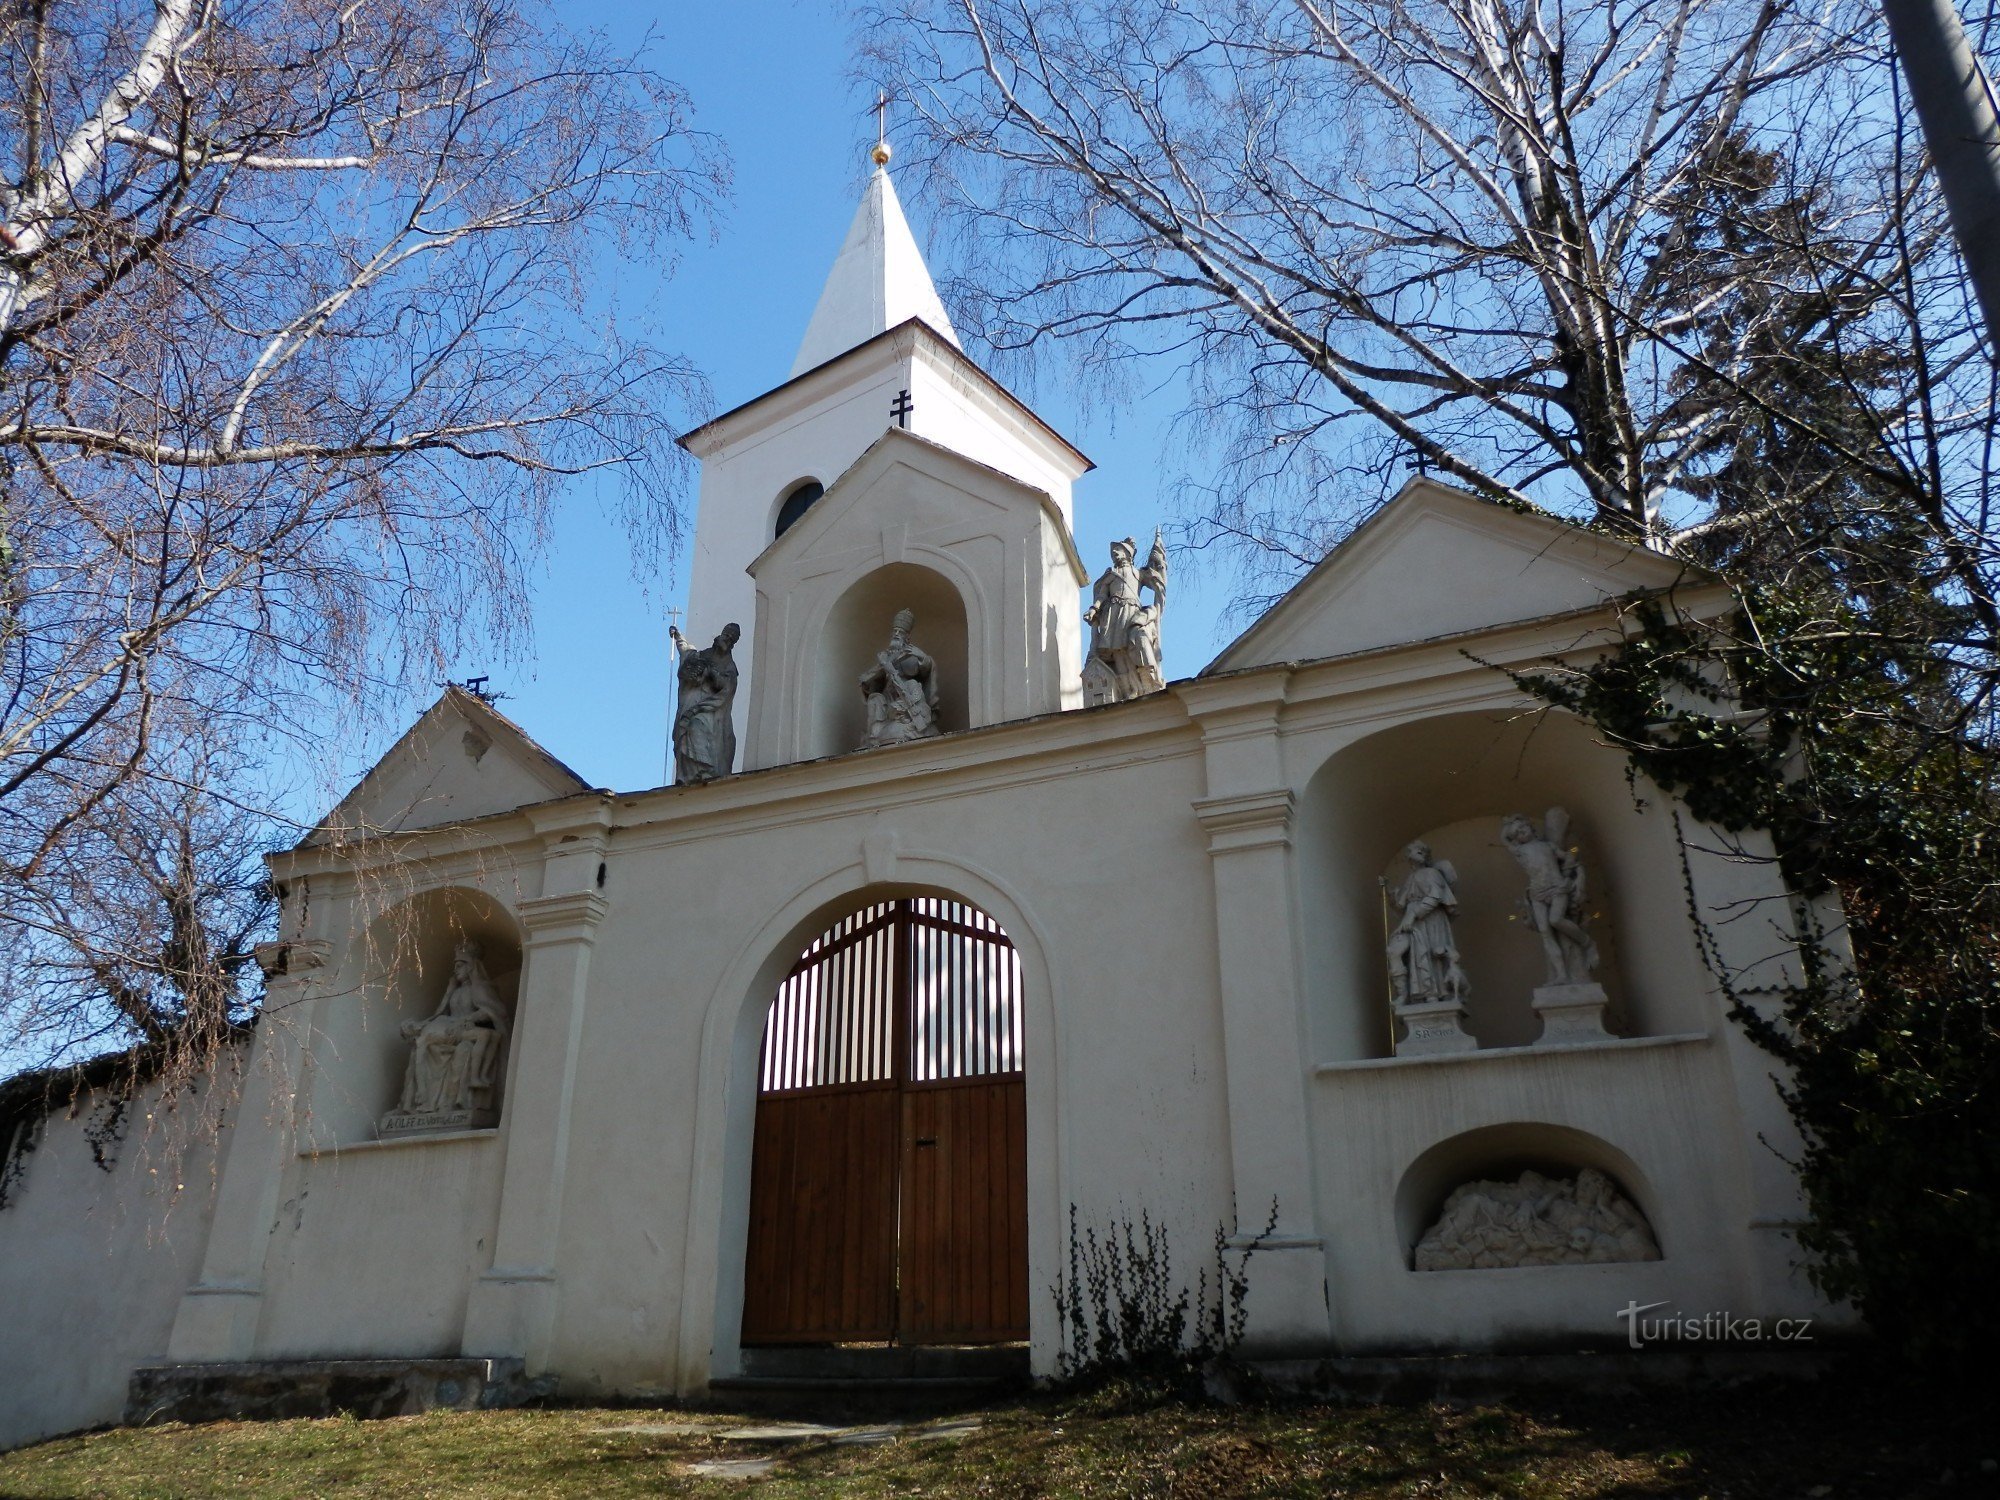 Kirken St. Filipa og Jakub i Kadovo